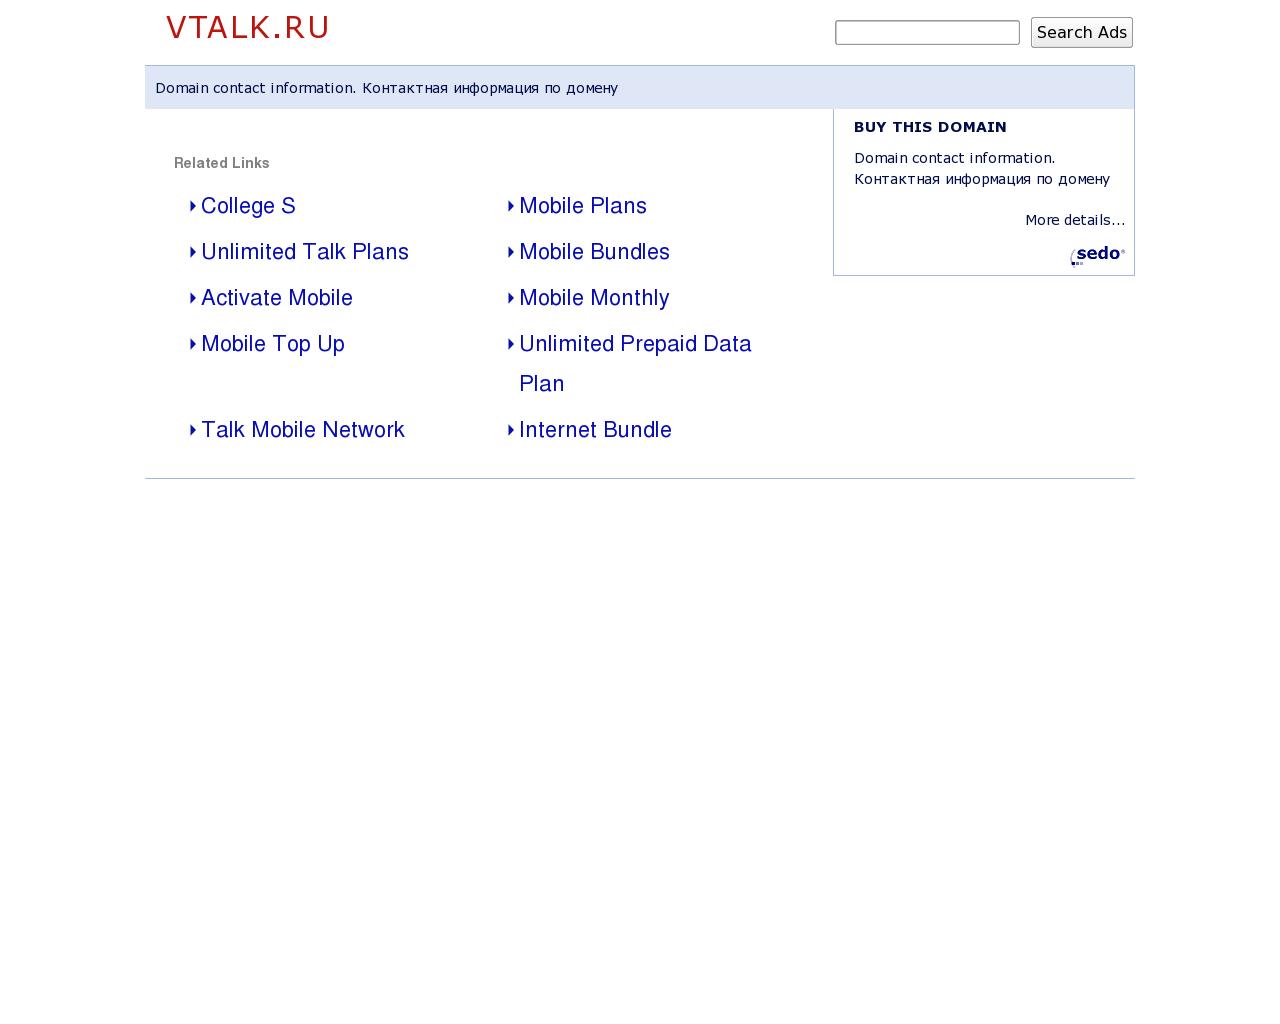 Изображение сайта vtalk.ru в разрешении 1280x1024